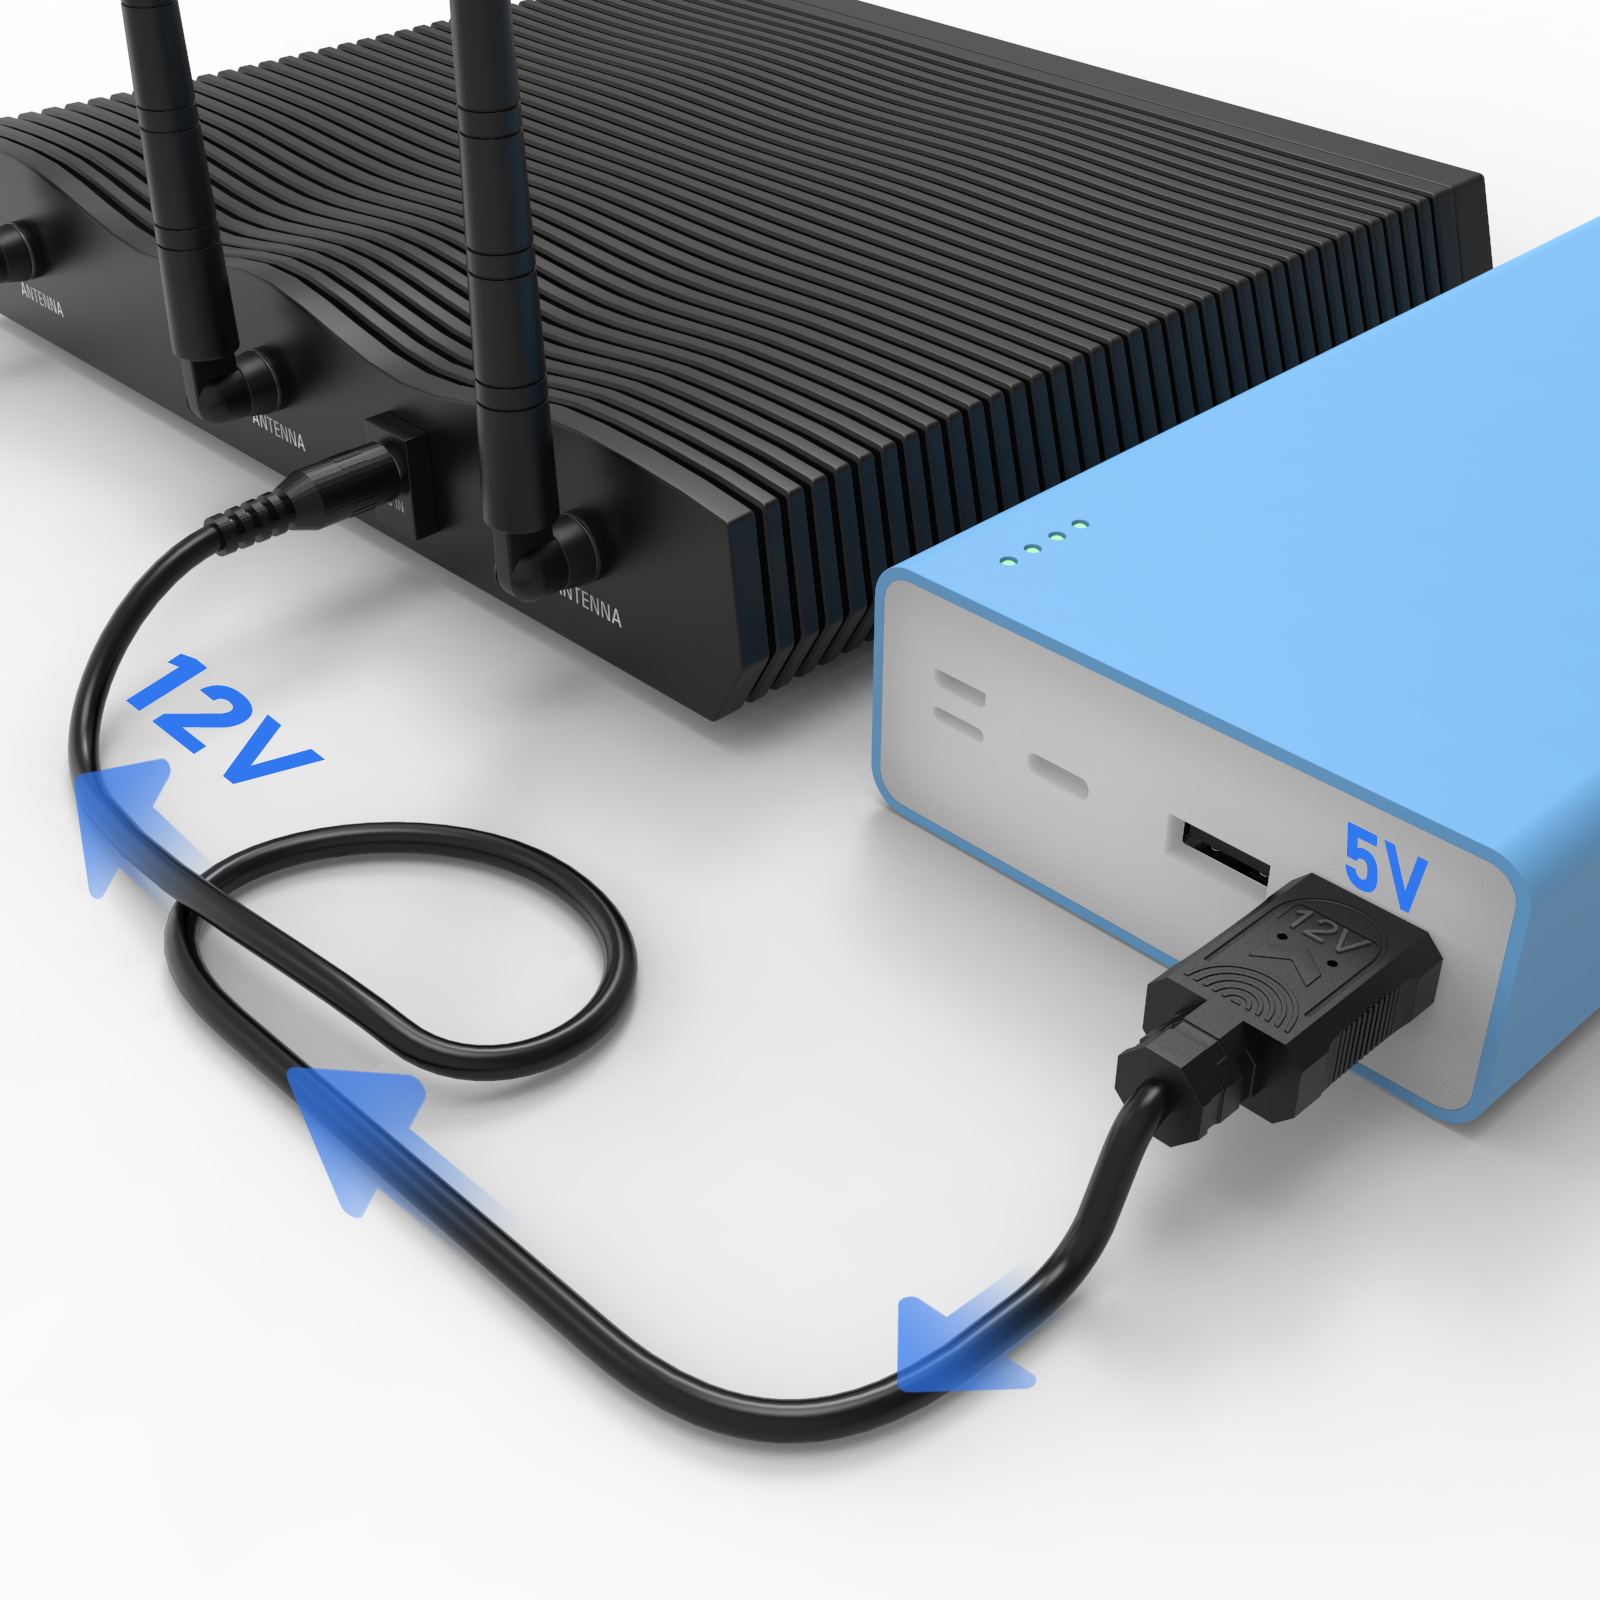 Step-up kabel til wifi router 5V til 12V